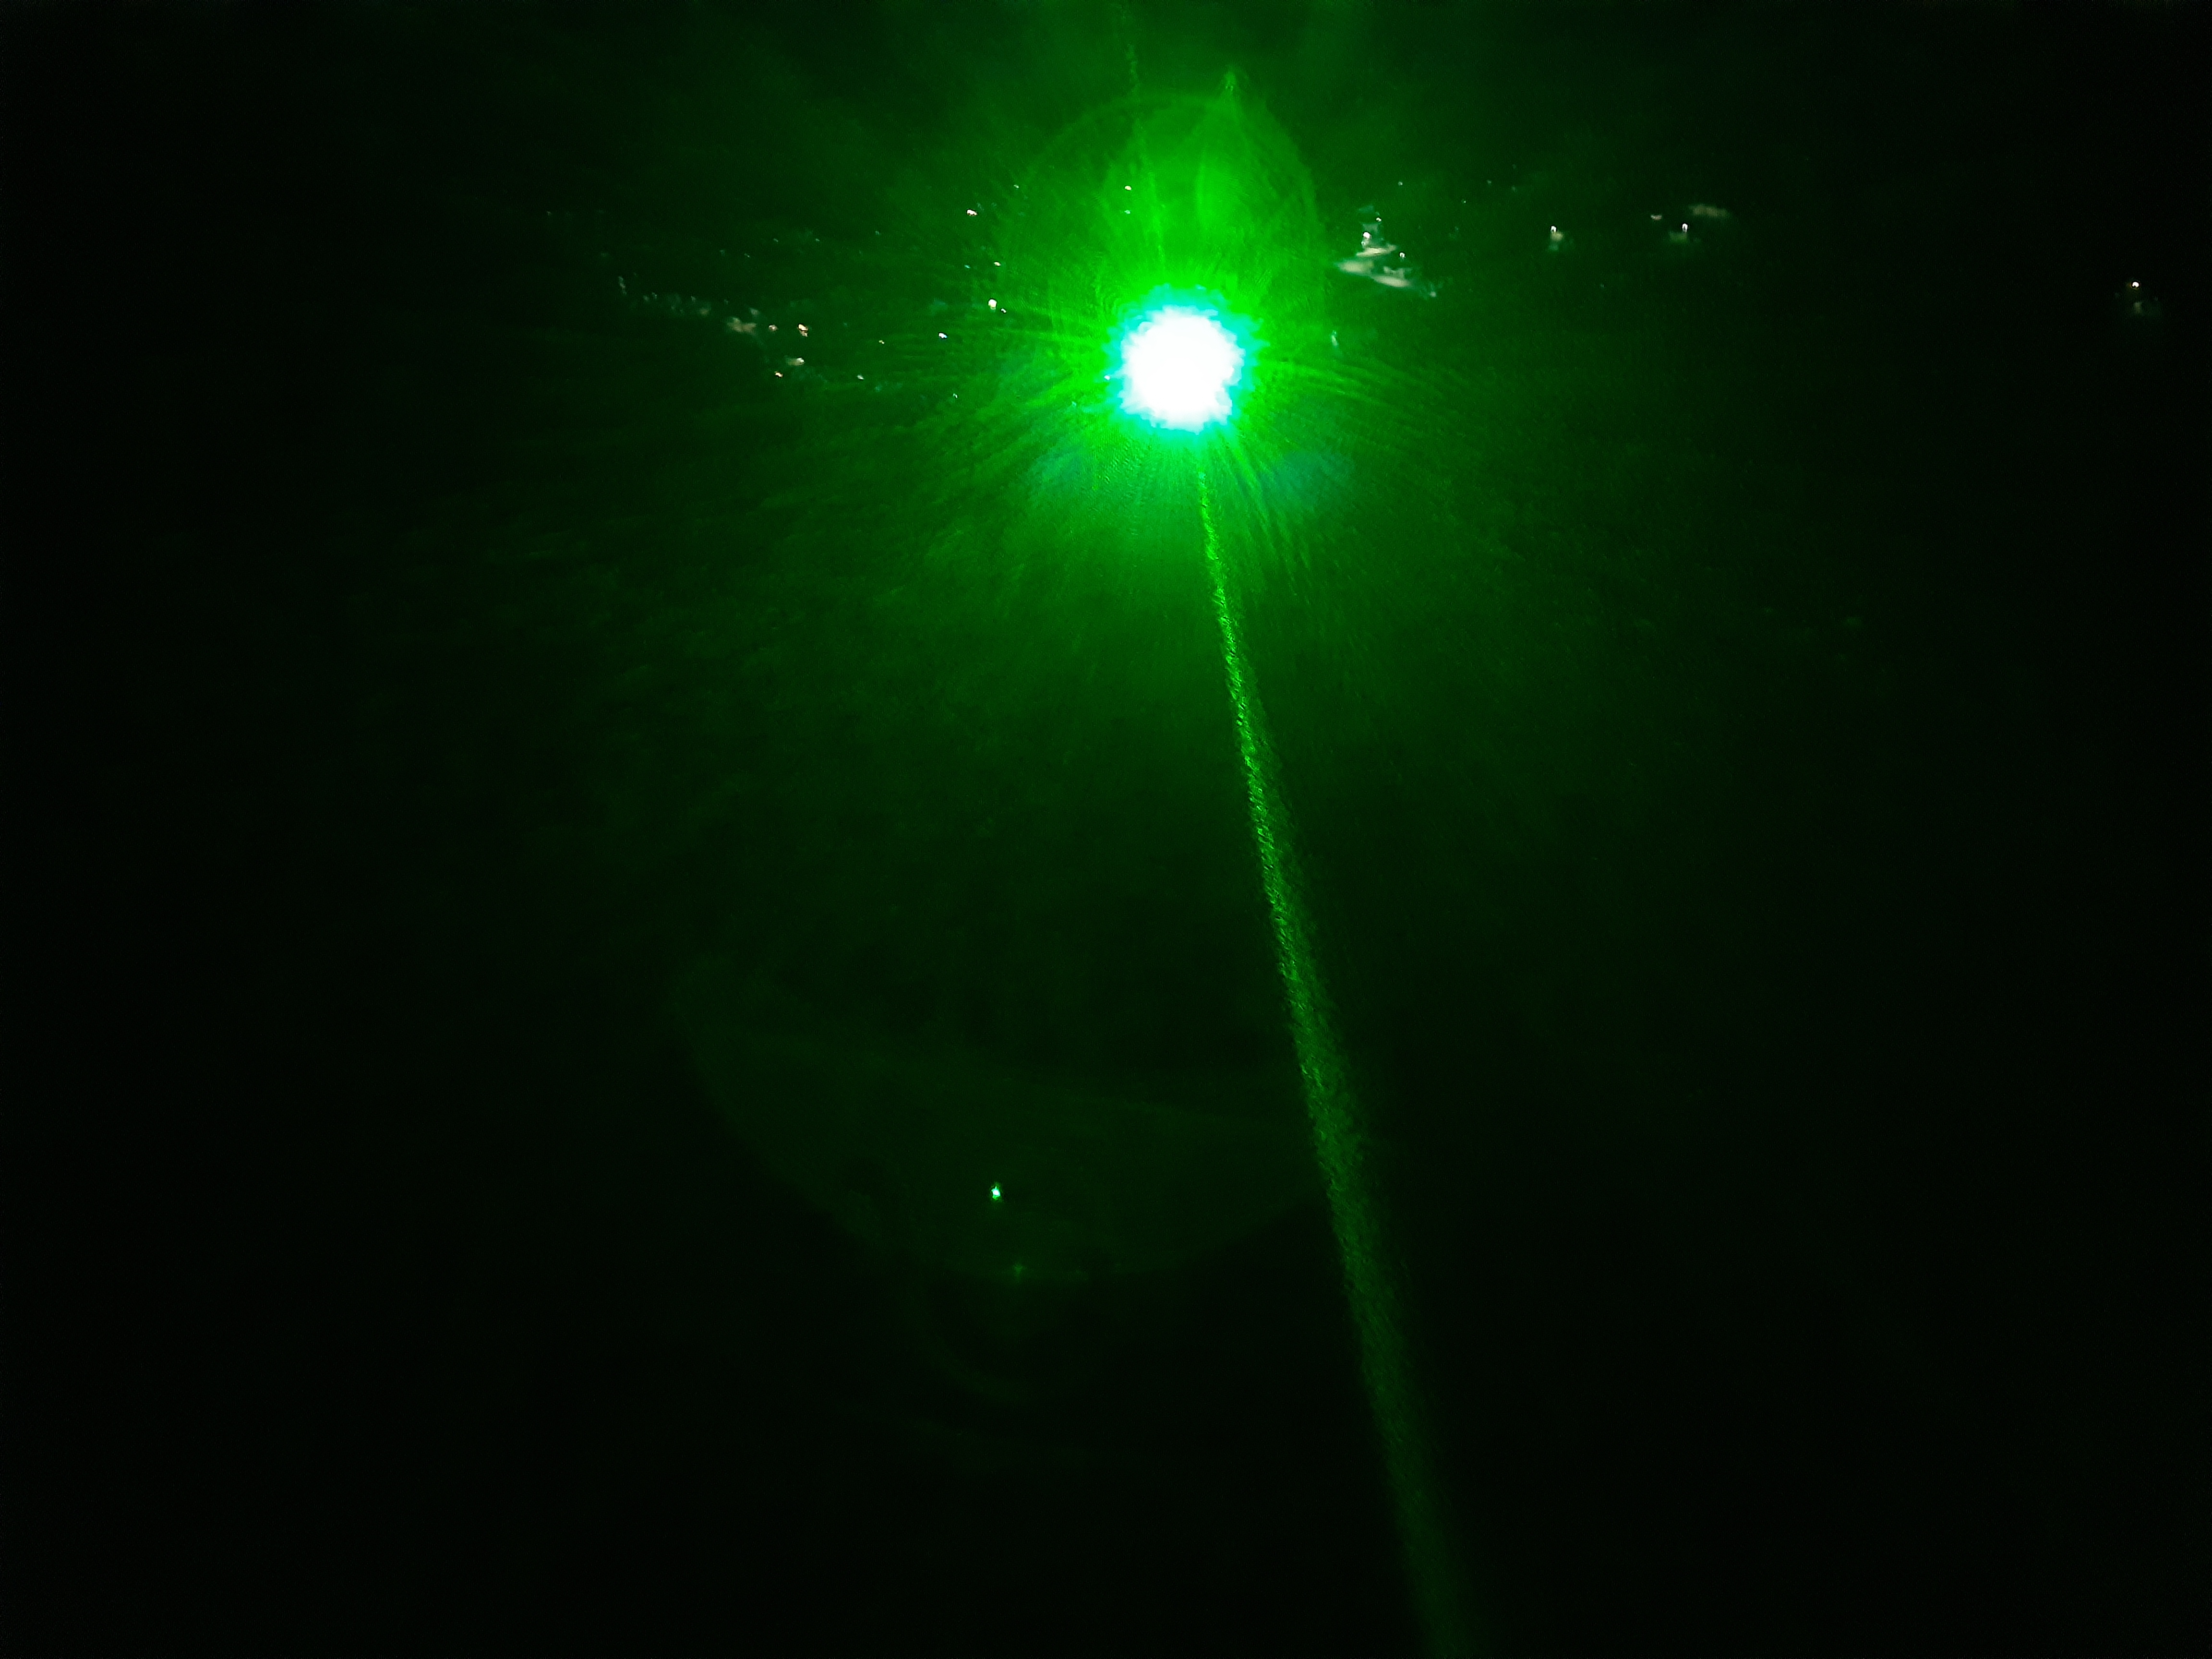 Laser Vert Aesthetic